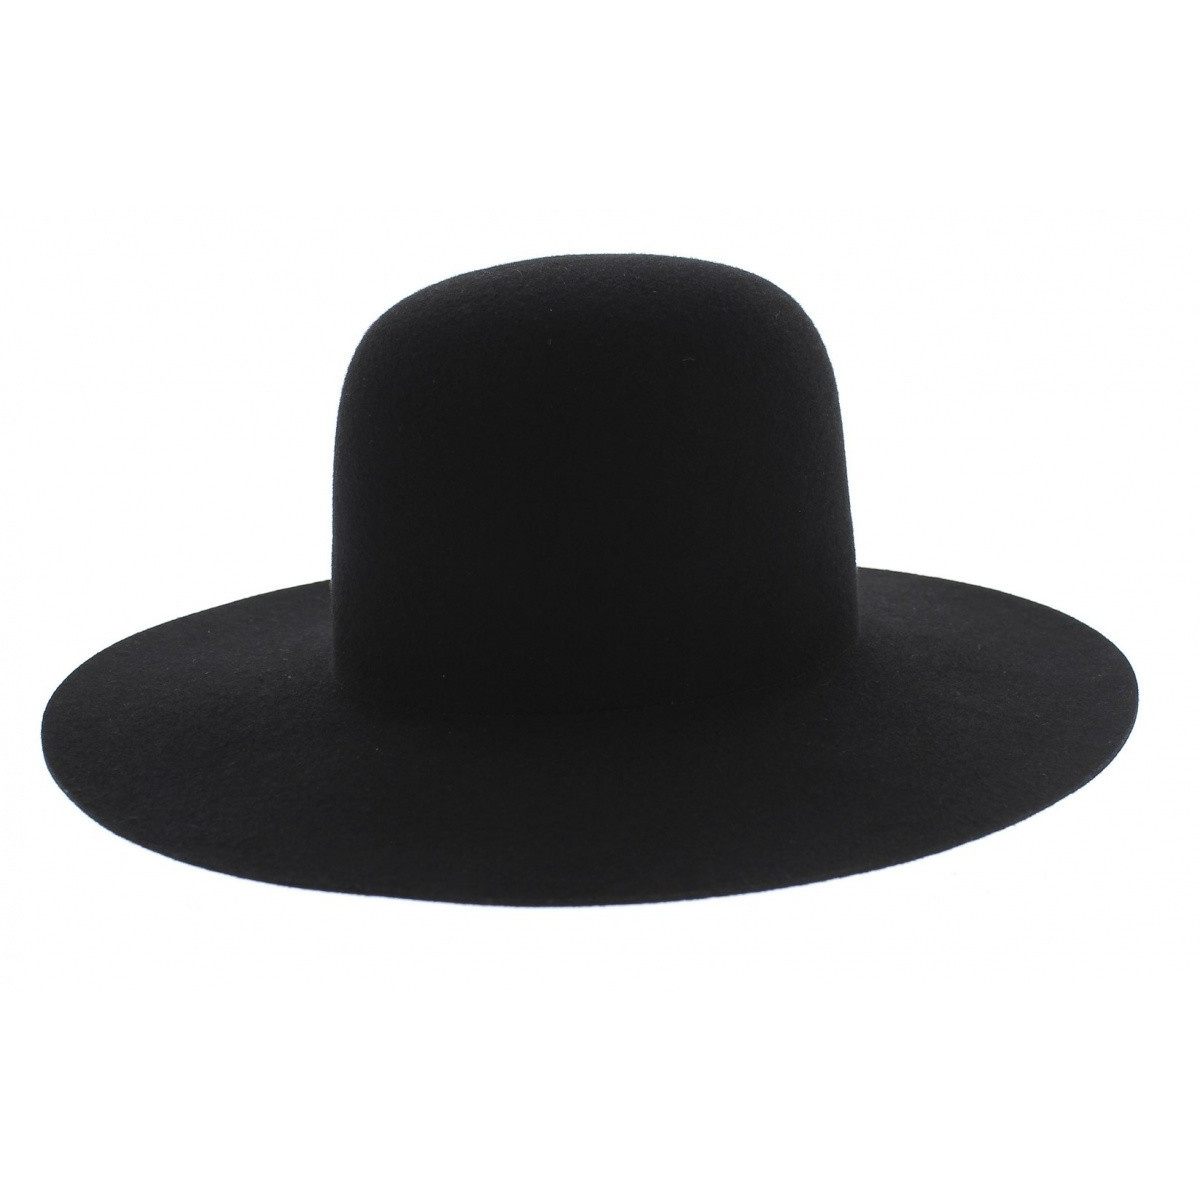 https://media3.chapellerie-traclet.com/52590-thickbox_default/chapeau-marc-veyrat-enfant-feutre-laine-noir-traclet.jpg